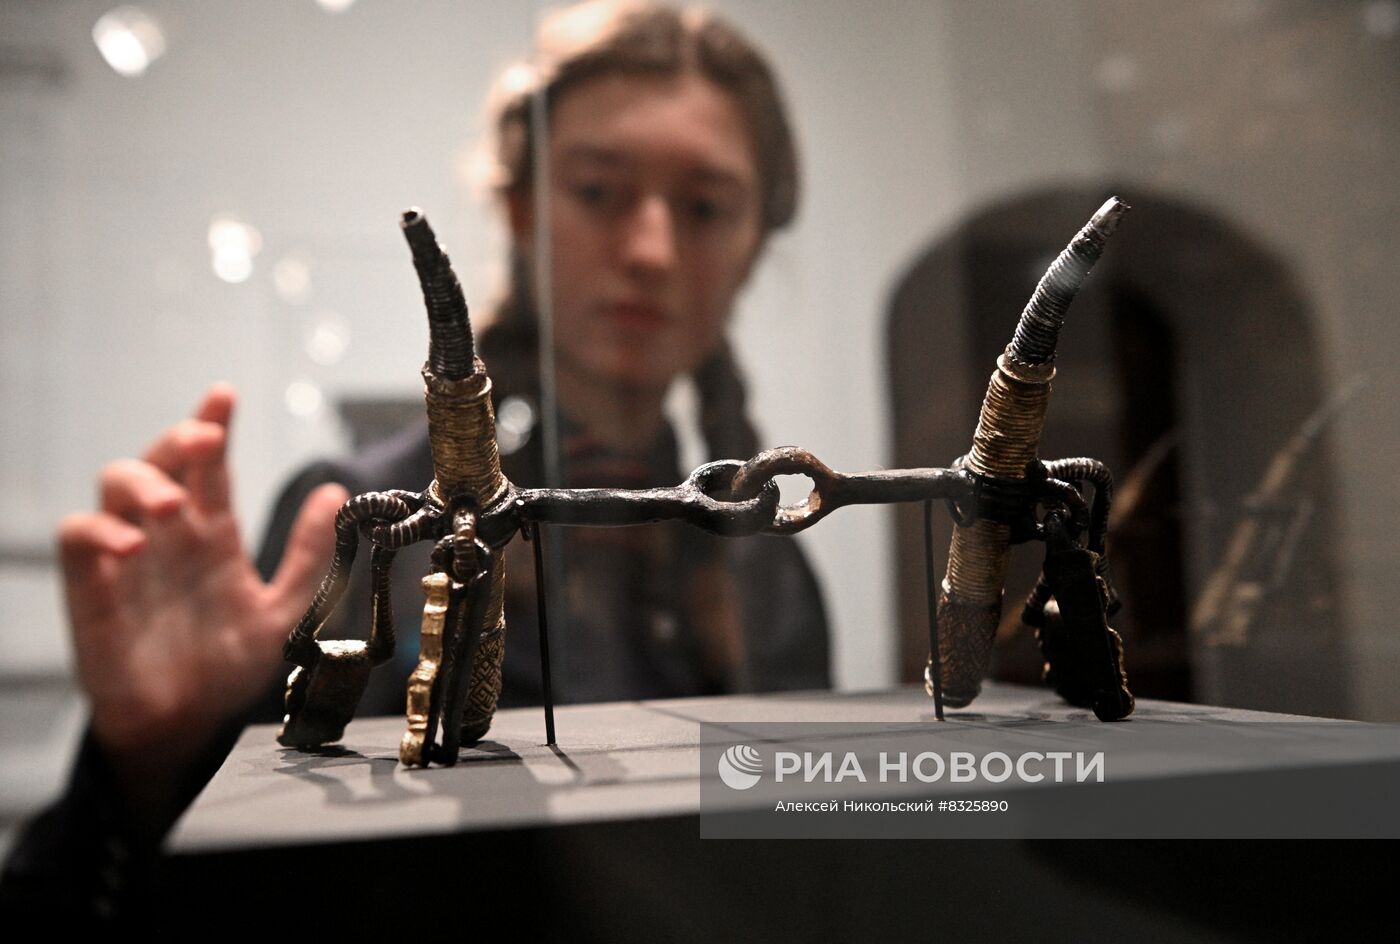 Выставка "Древние воины Янтарного края"